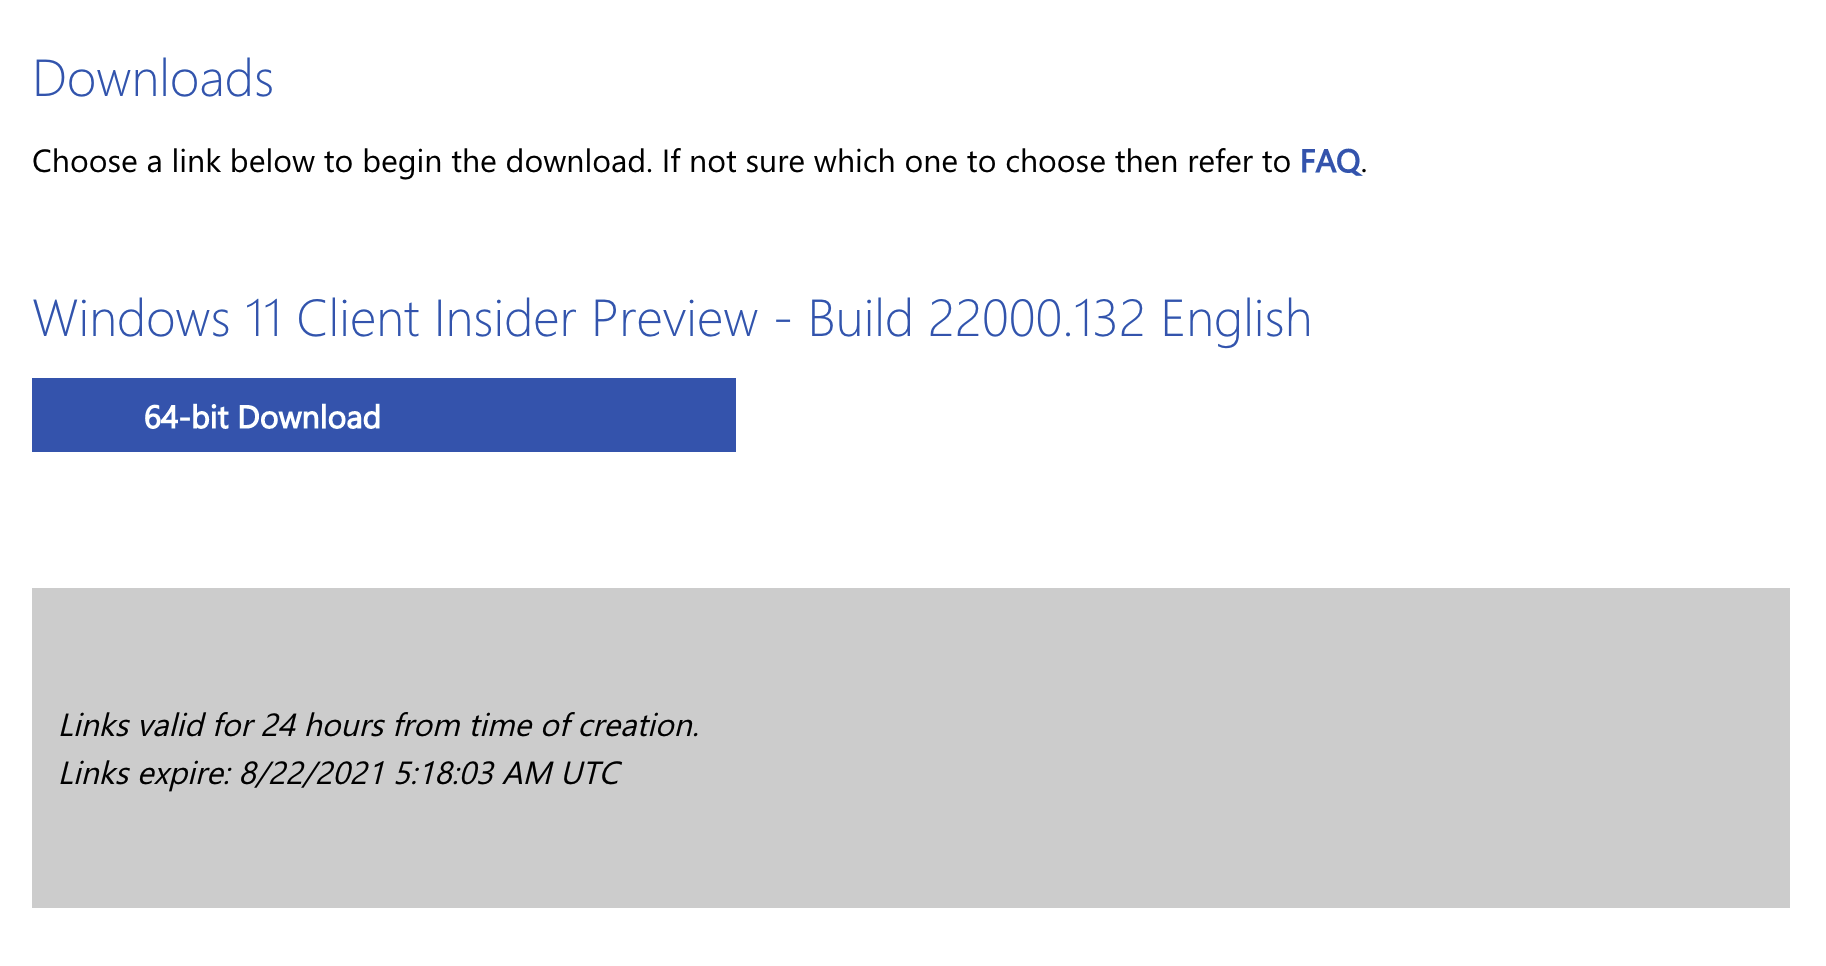 โหลดเลย Microsoft แจก Windows 11 ไฟล์ ISO ให้ติดตั้งกันแบบใหม่แกะกล่องได้แล้ว